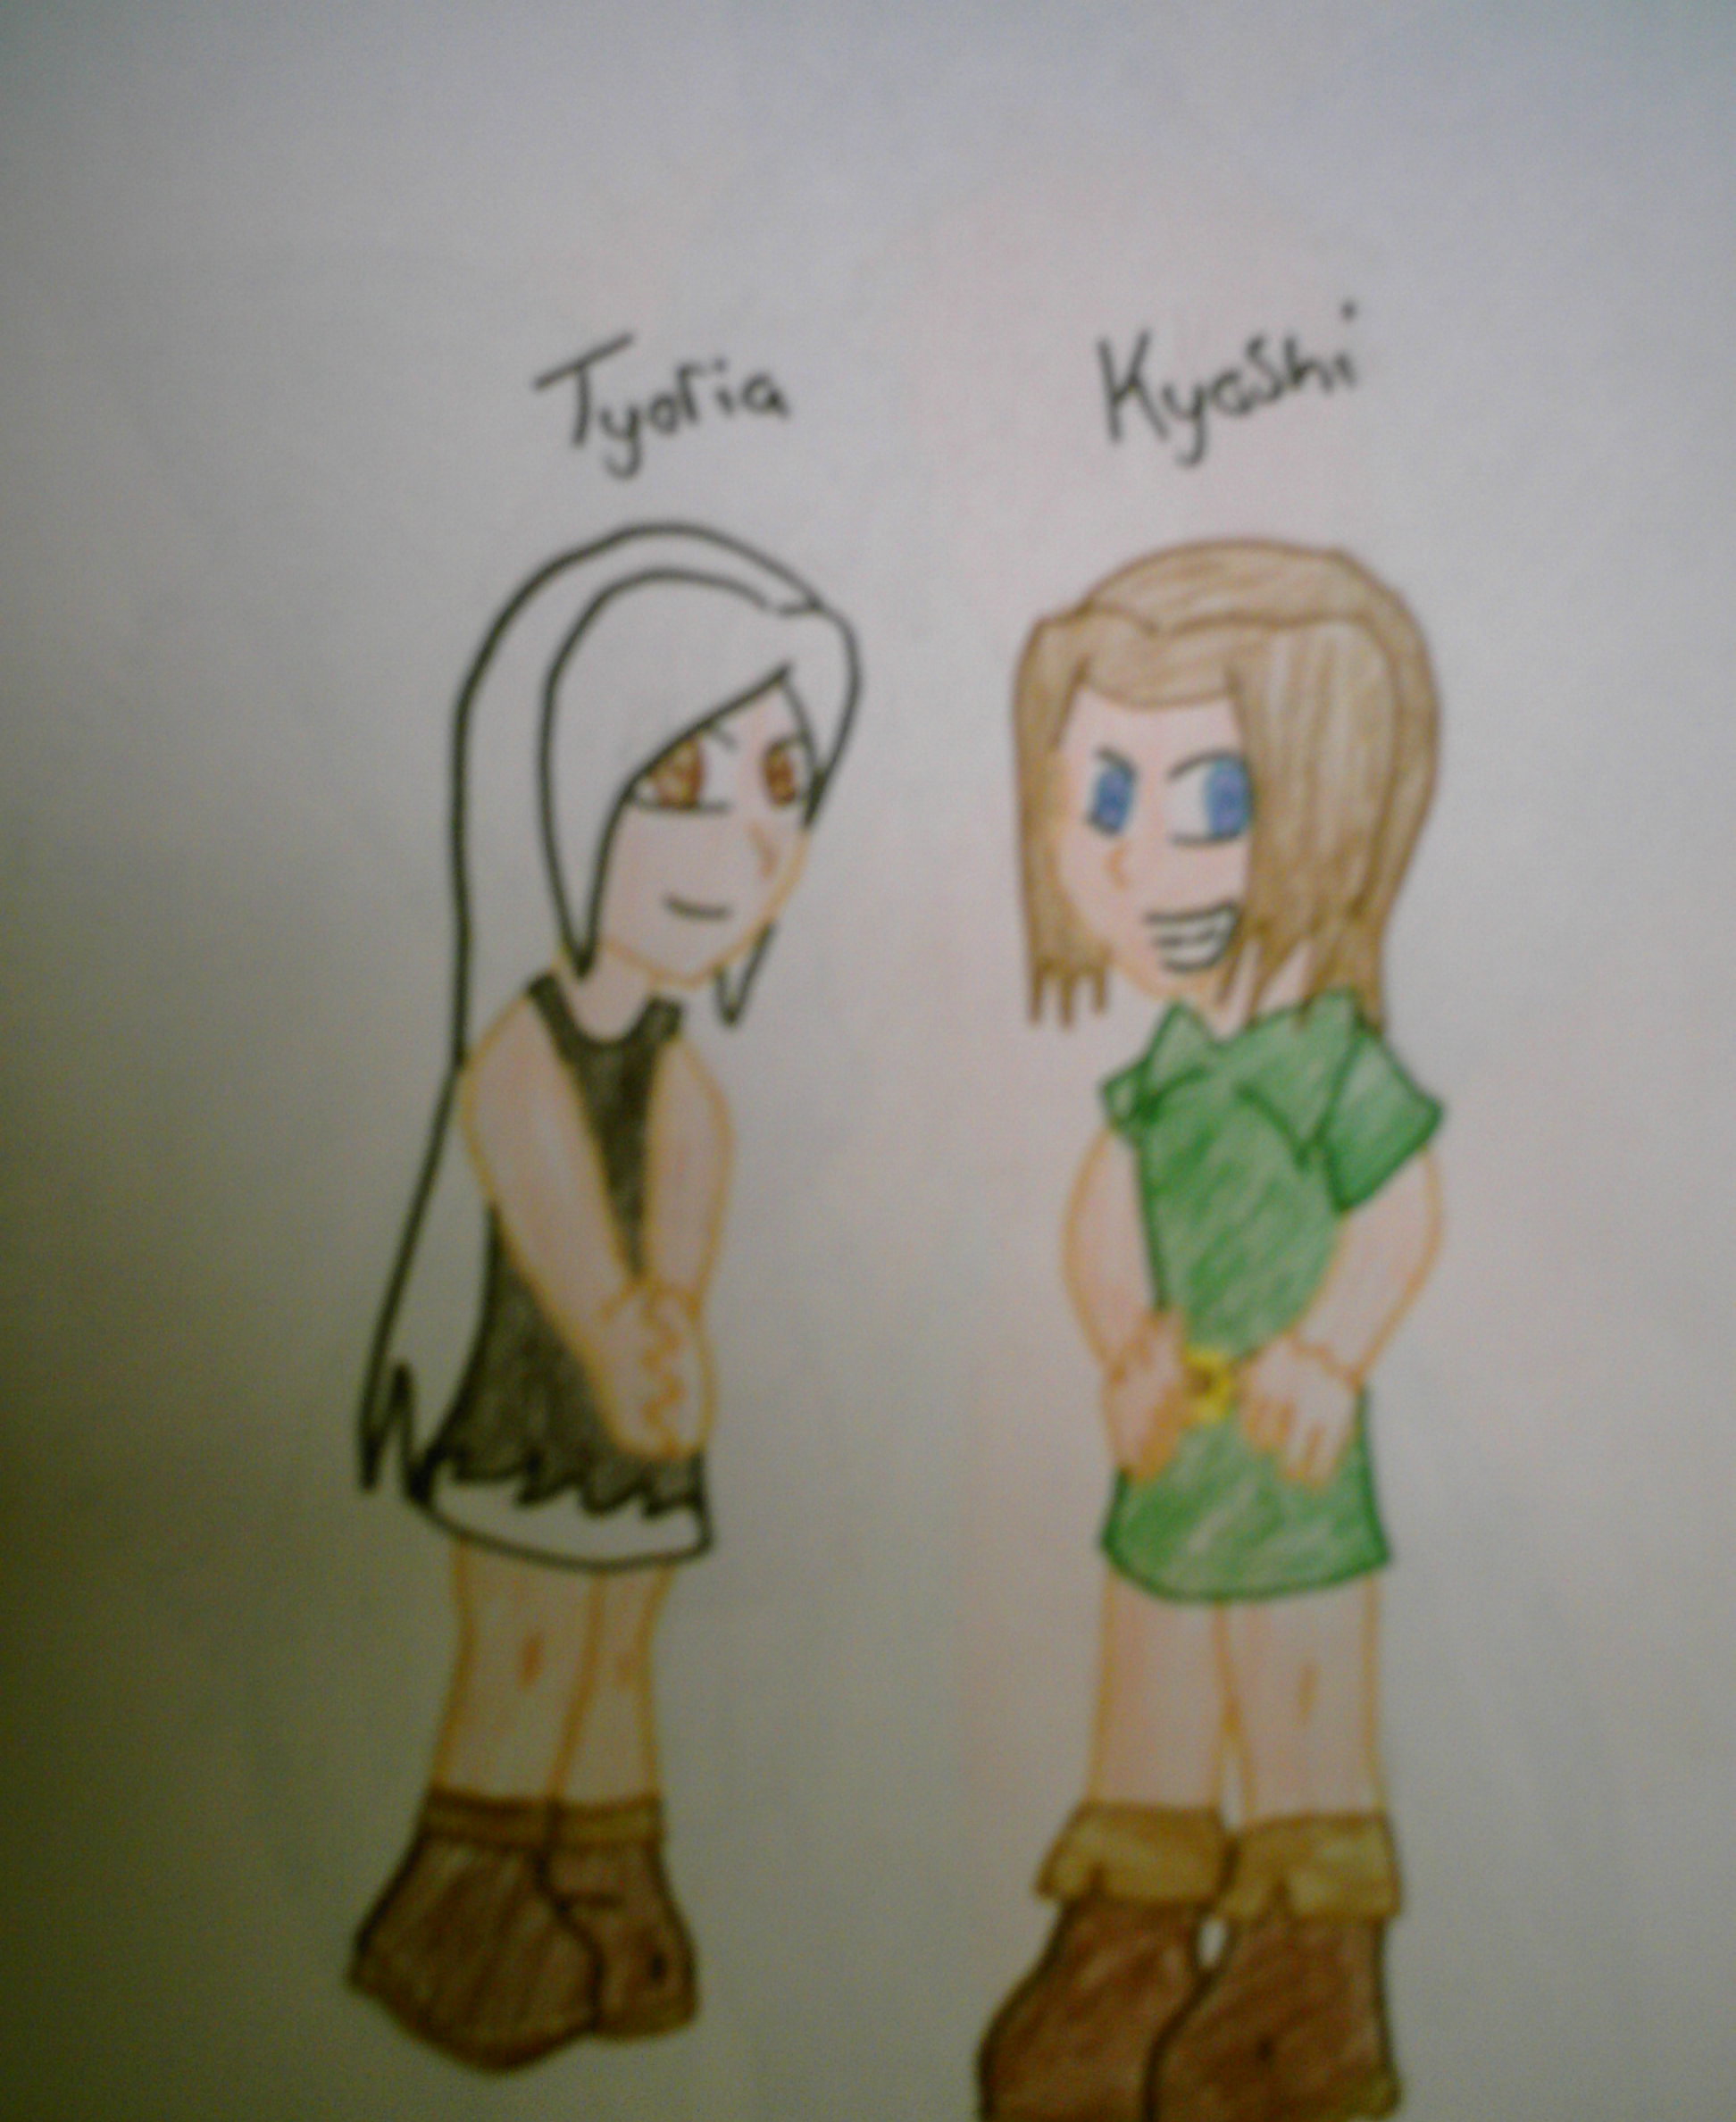 Kyoshi and Tyoria by KisaShika